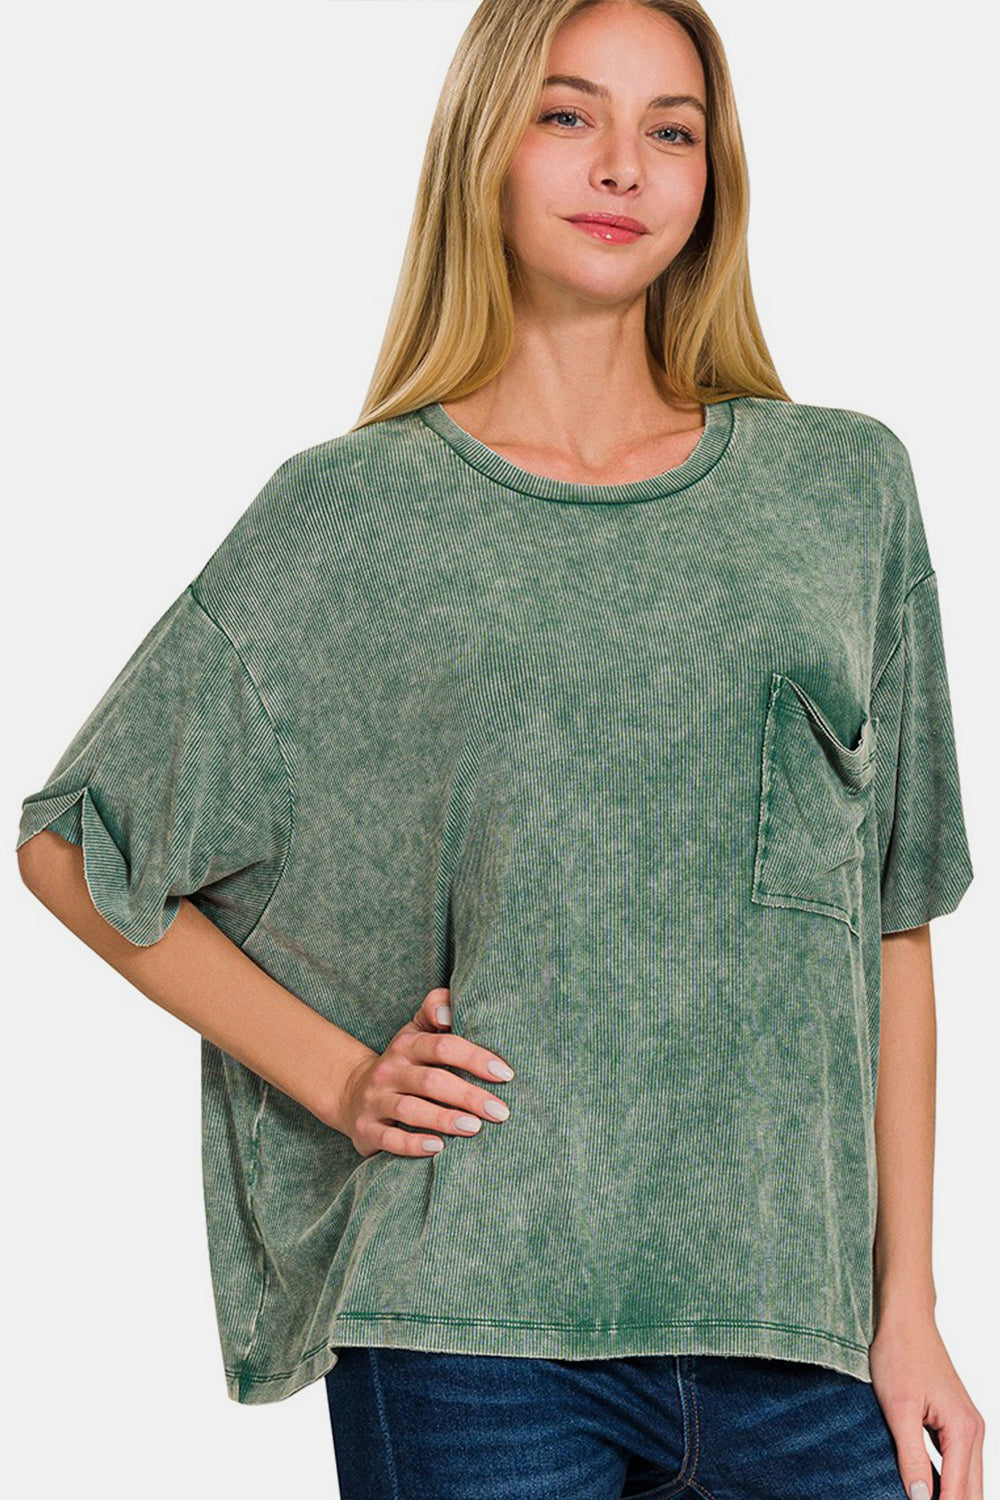 Zenana Full Size Round Neck Short Sleeve T-Shirt